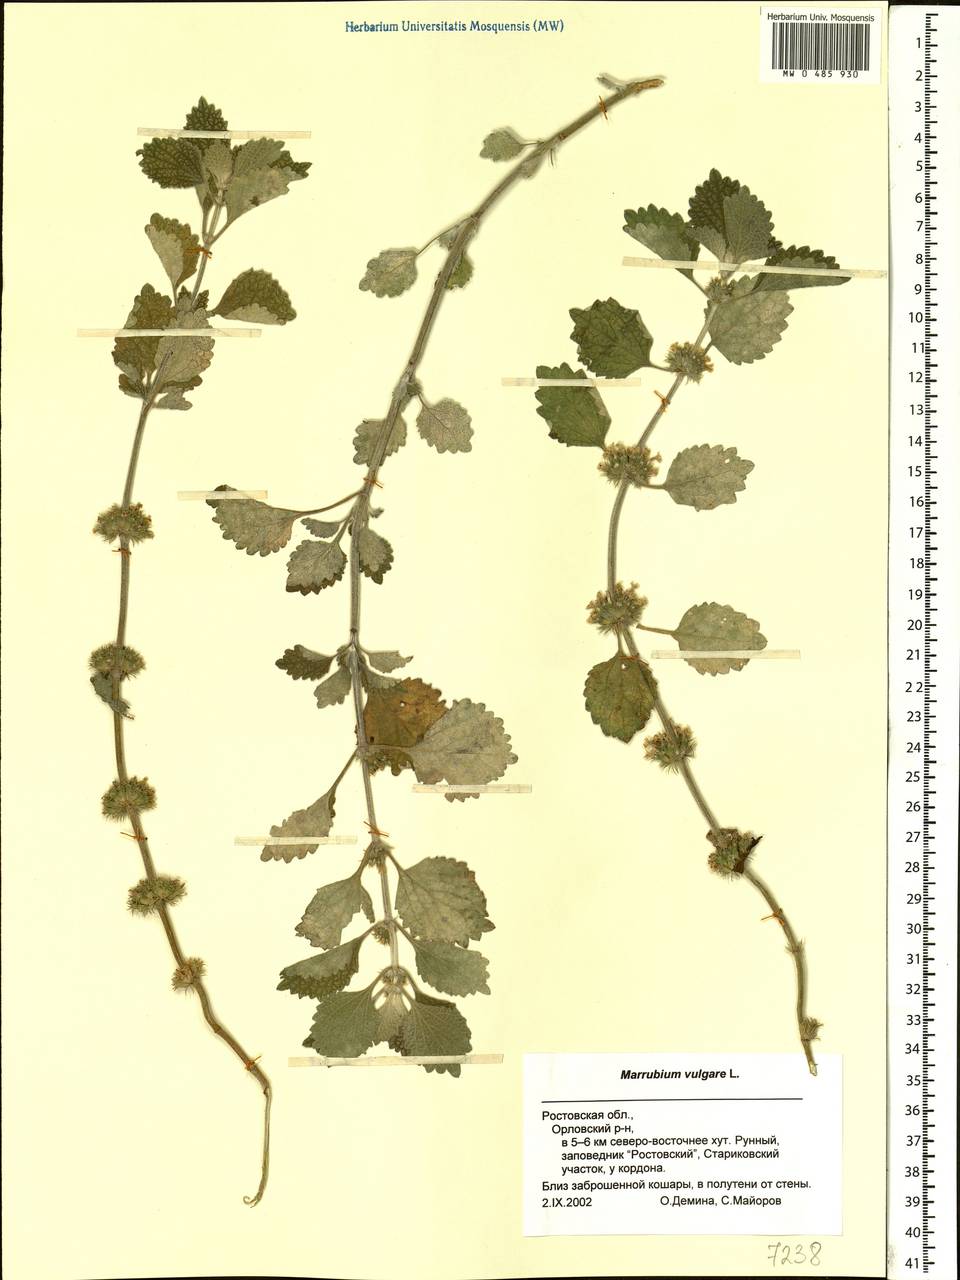 Marrubium vulgare L., Eastern Europe, Rostov Oblast (E12a) (Russia)